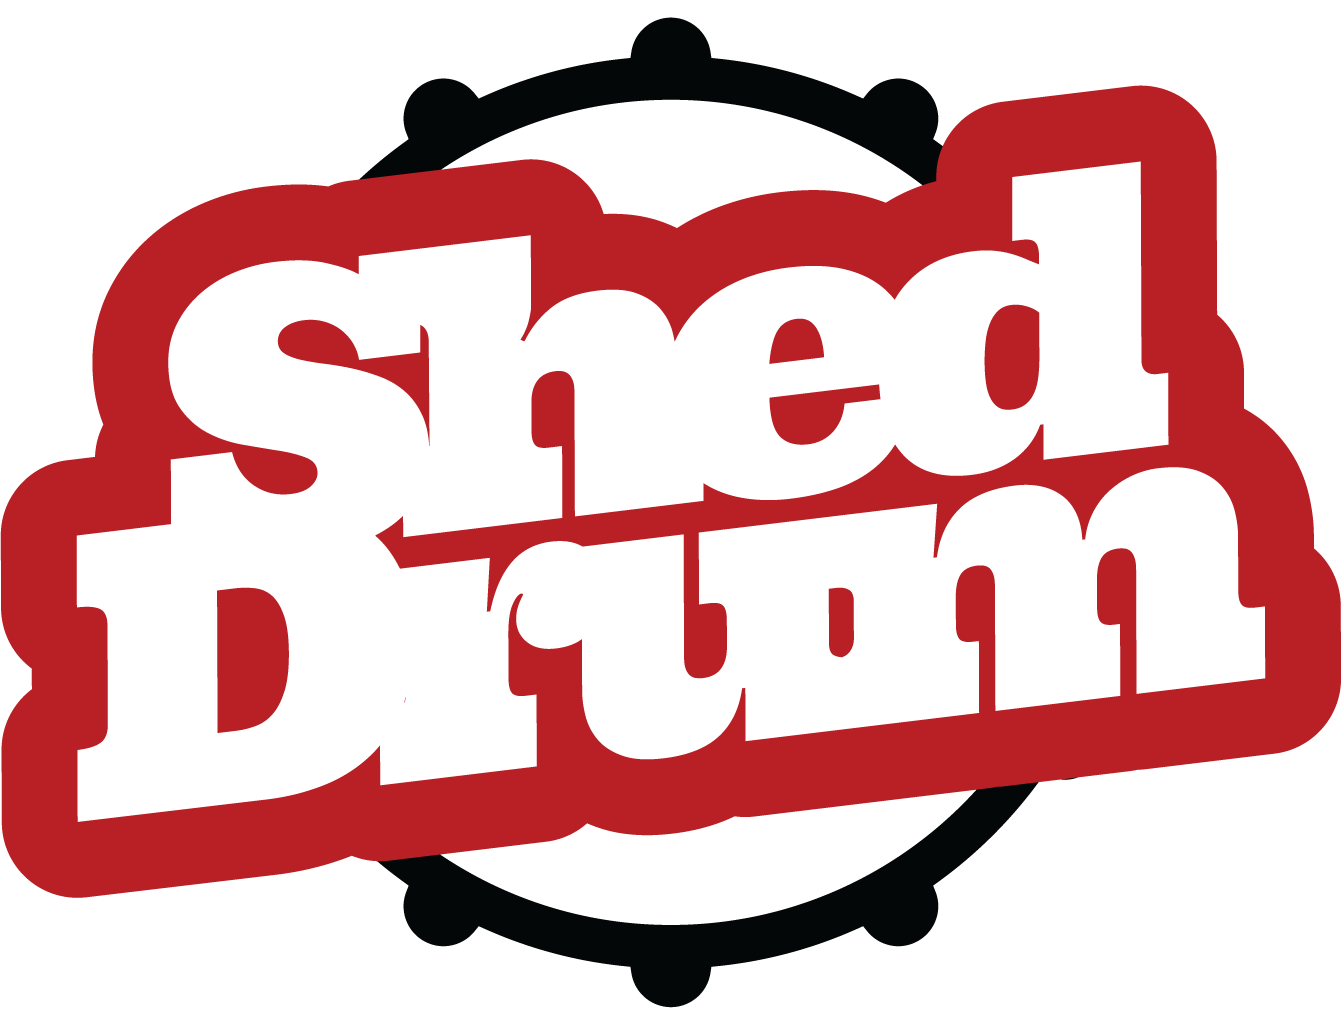 ShedDrum